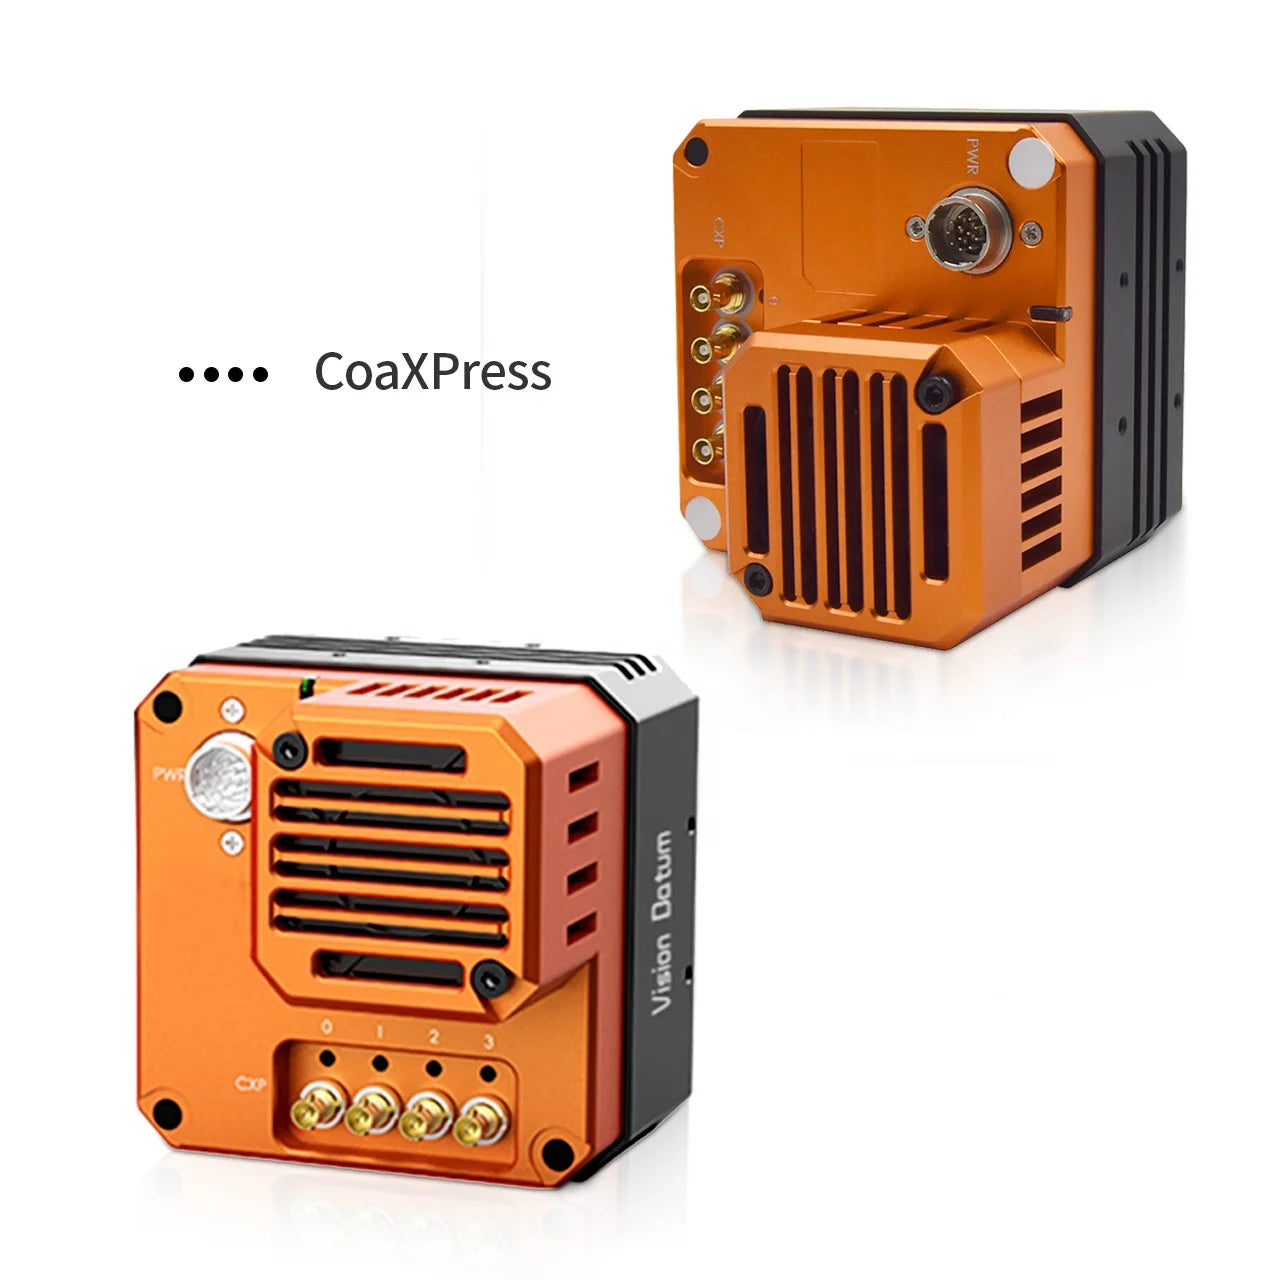 Камера Gpixel GMAX3265 CoaXpress с высоким разрешением 65MP 71FPS для проверки печатных плат